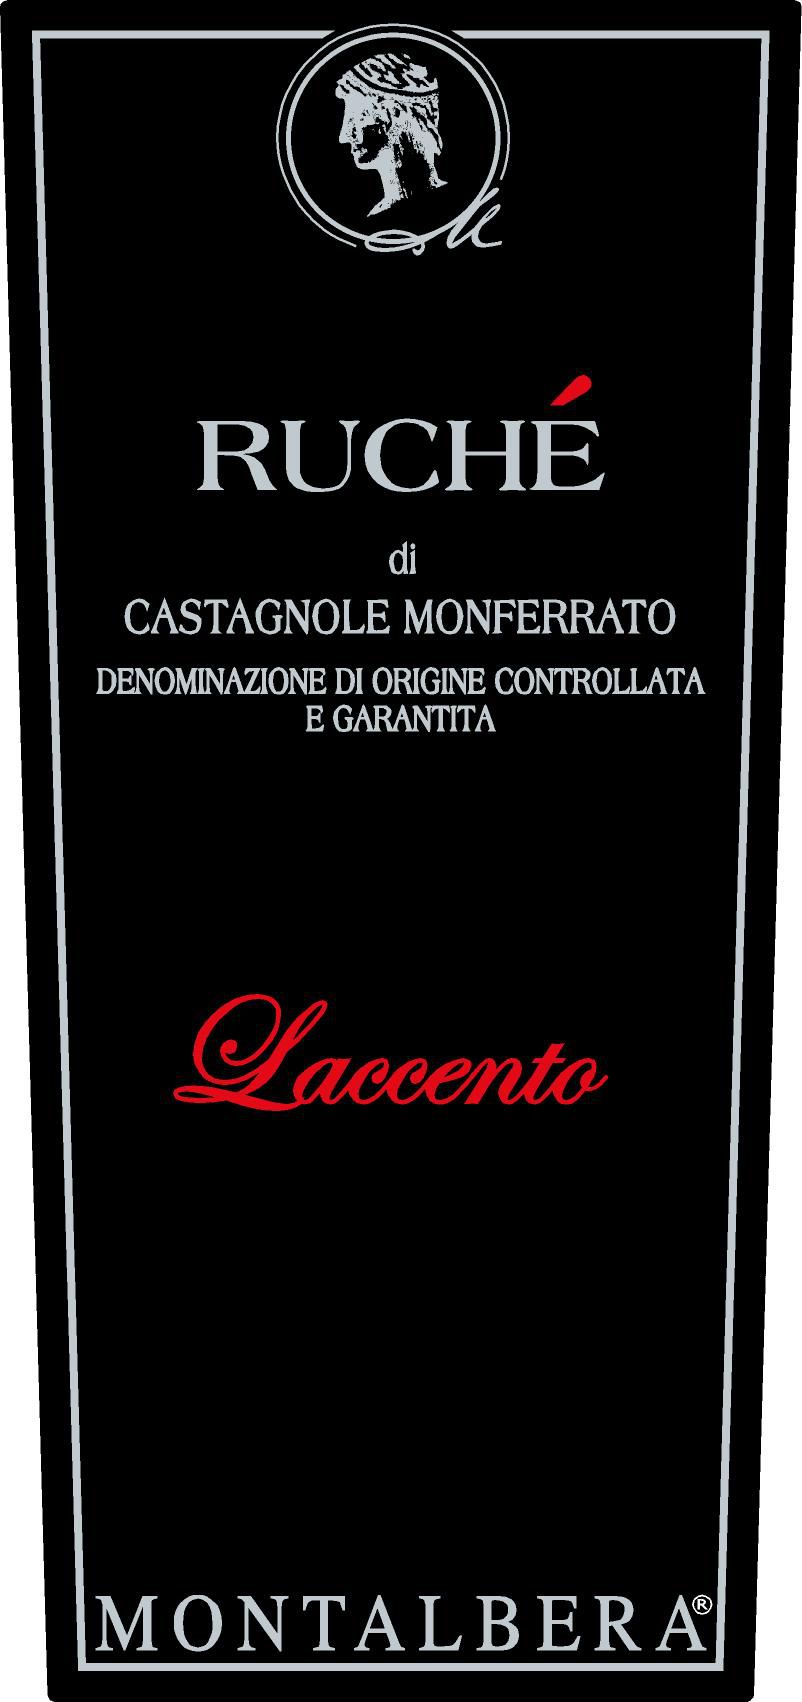 Ruché Laccento <i class="fa fa-leaf" aria-hidden="true"></i>